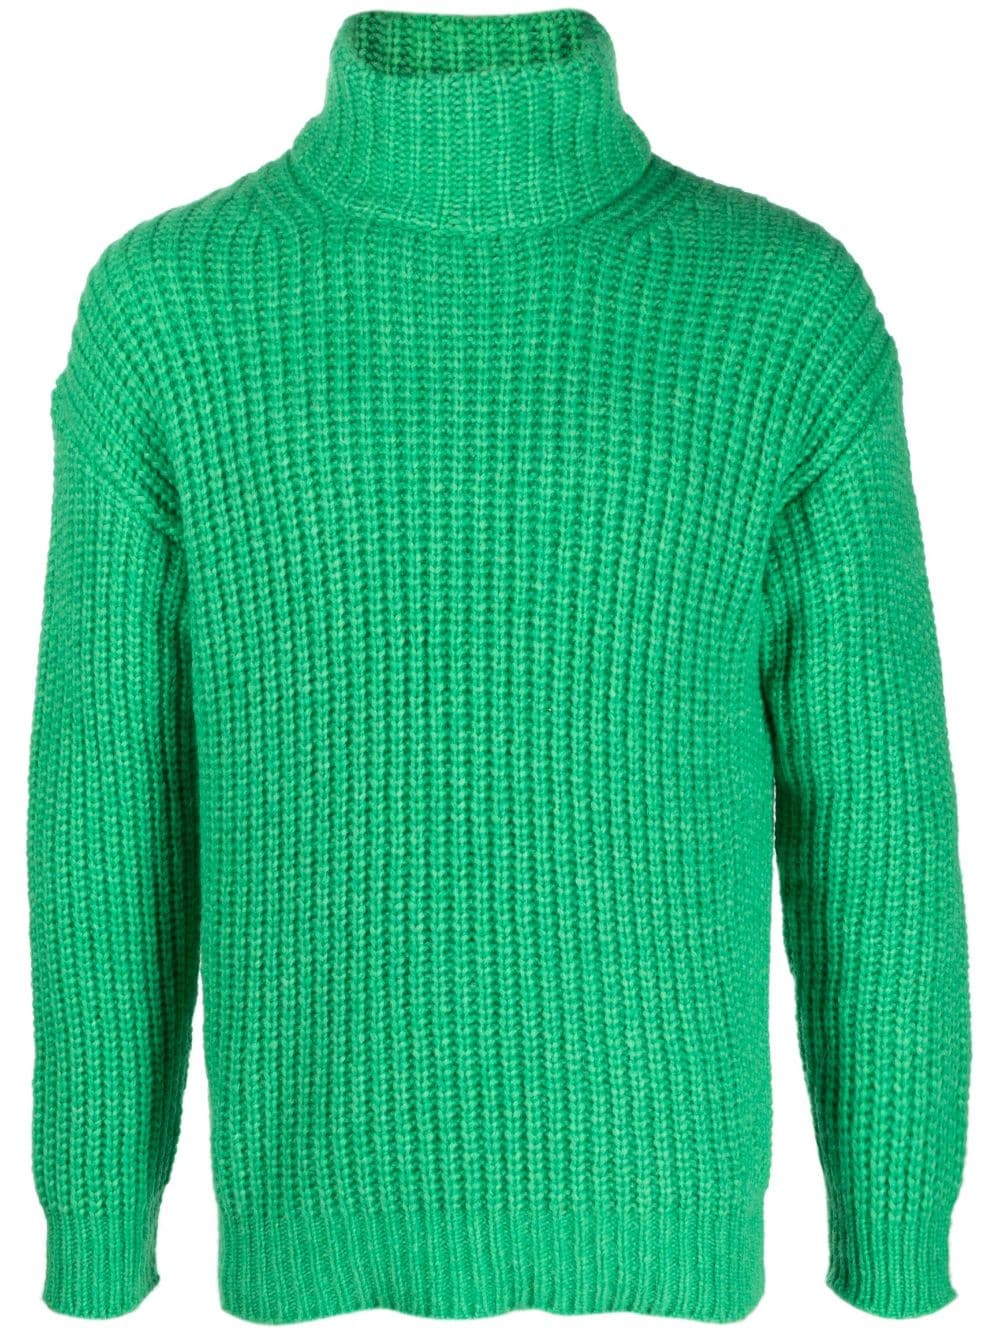 Image 1 of Nuur suéter tejido de canalé con cuello vuelto